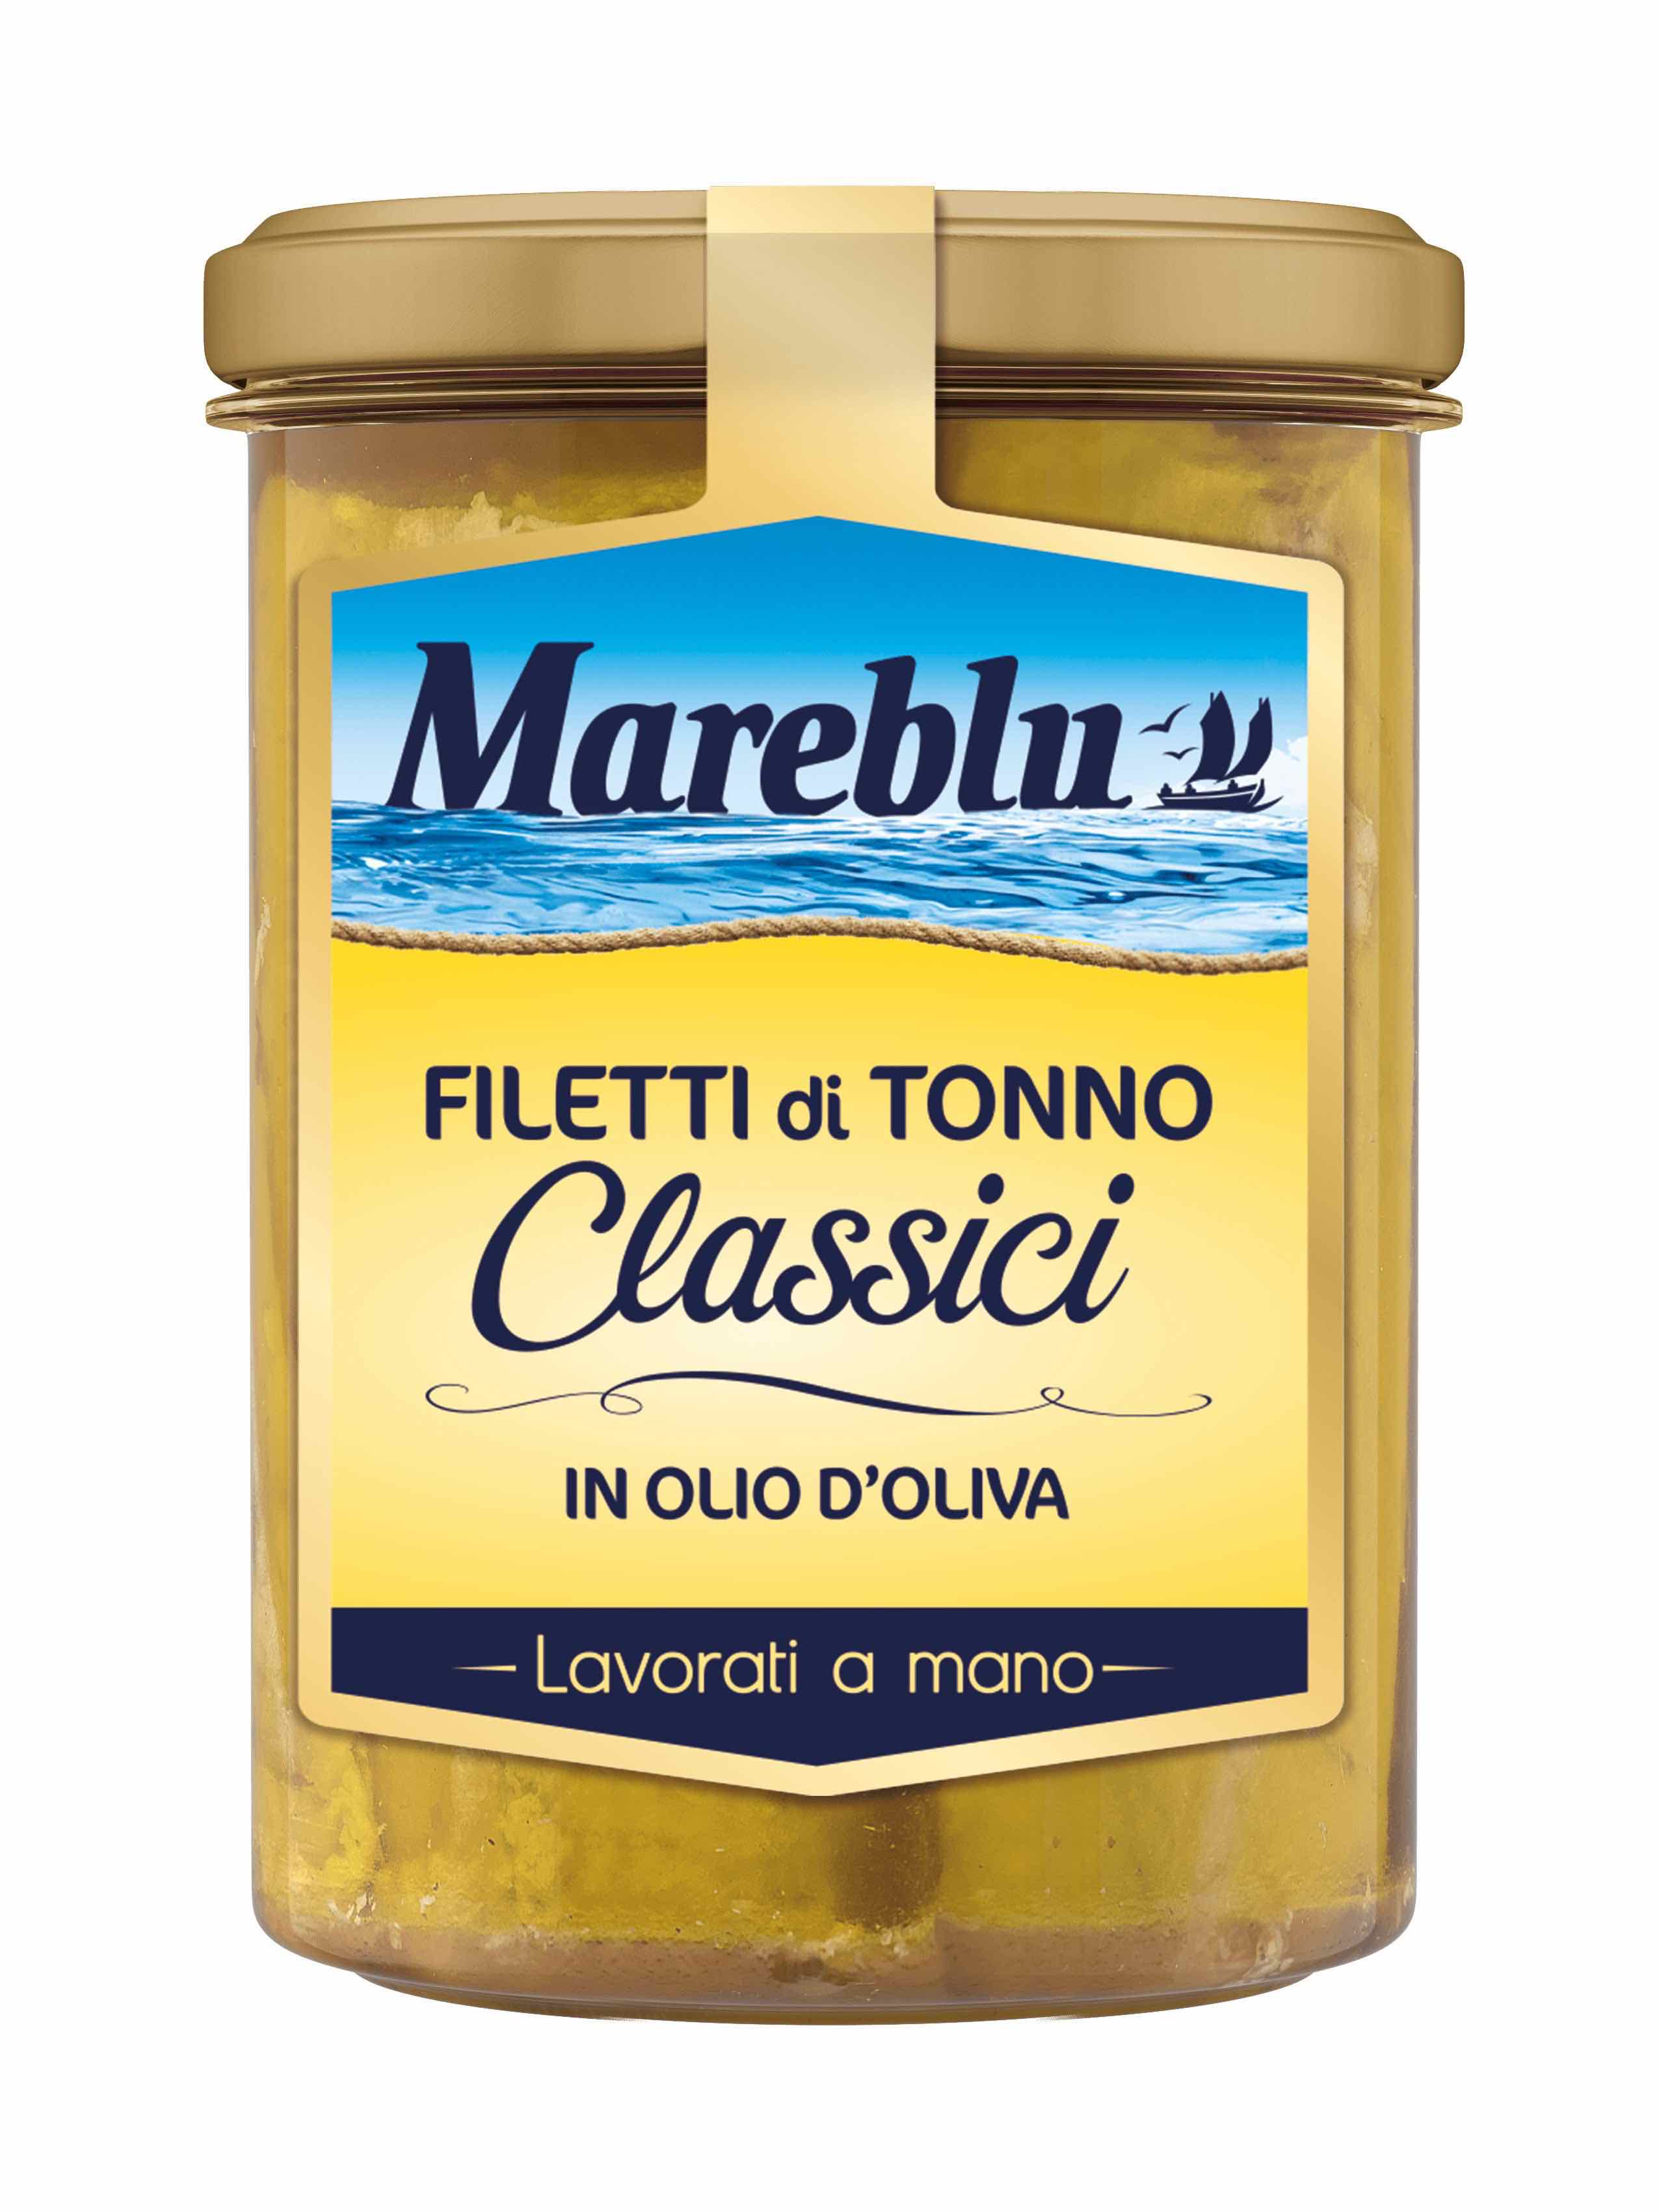 Filetti di Tonno in vetro Mareblu: la novità che porta in tavola la qualità e il gusto del tonno lavorato a mano